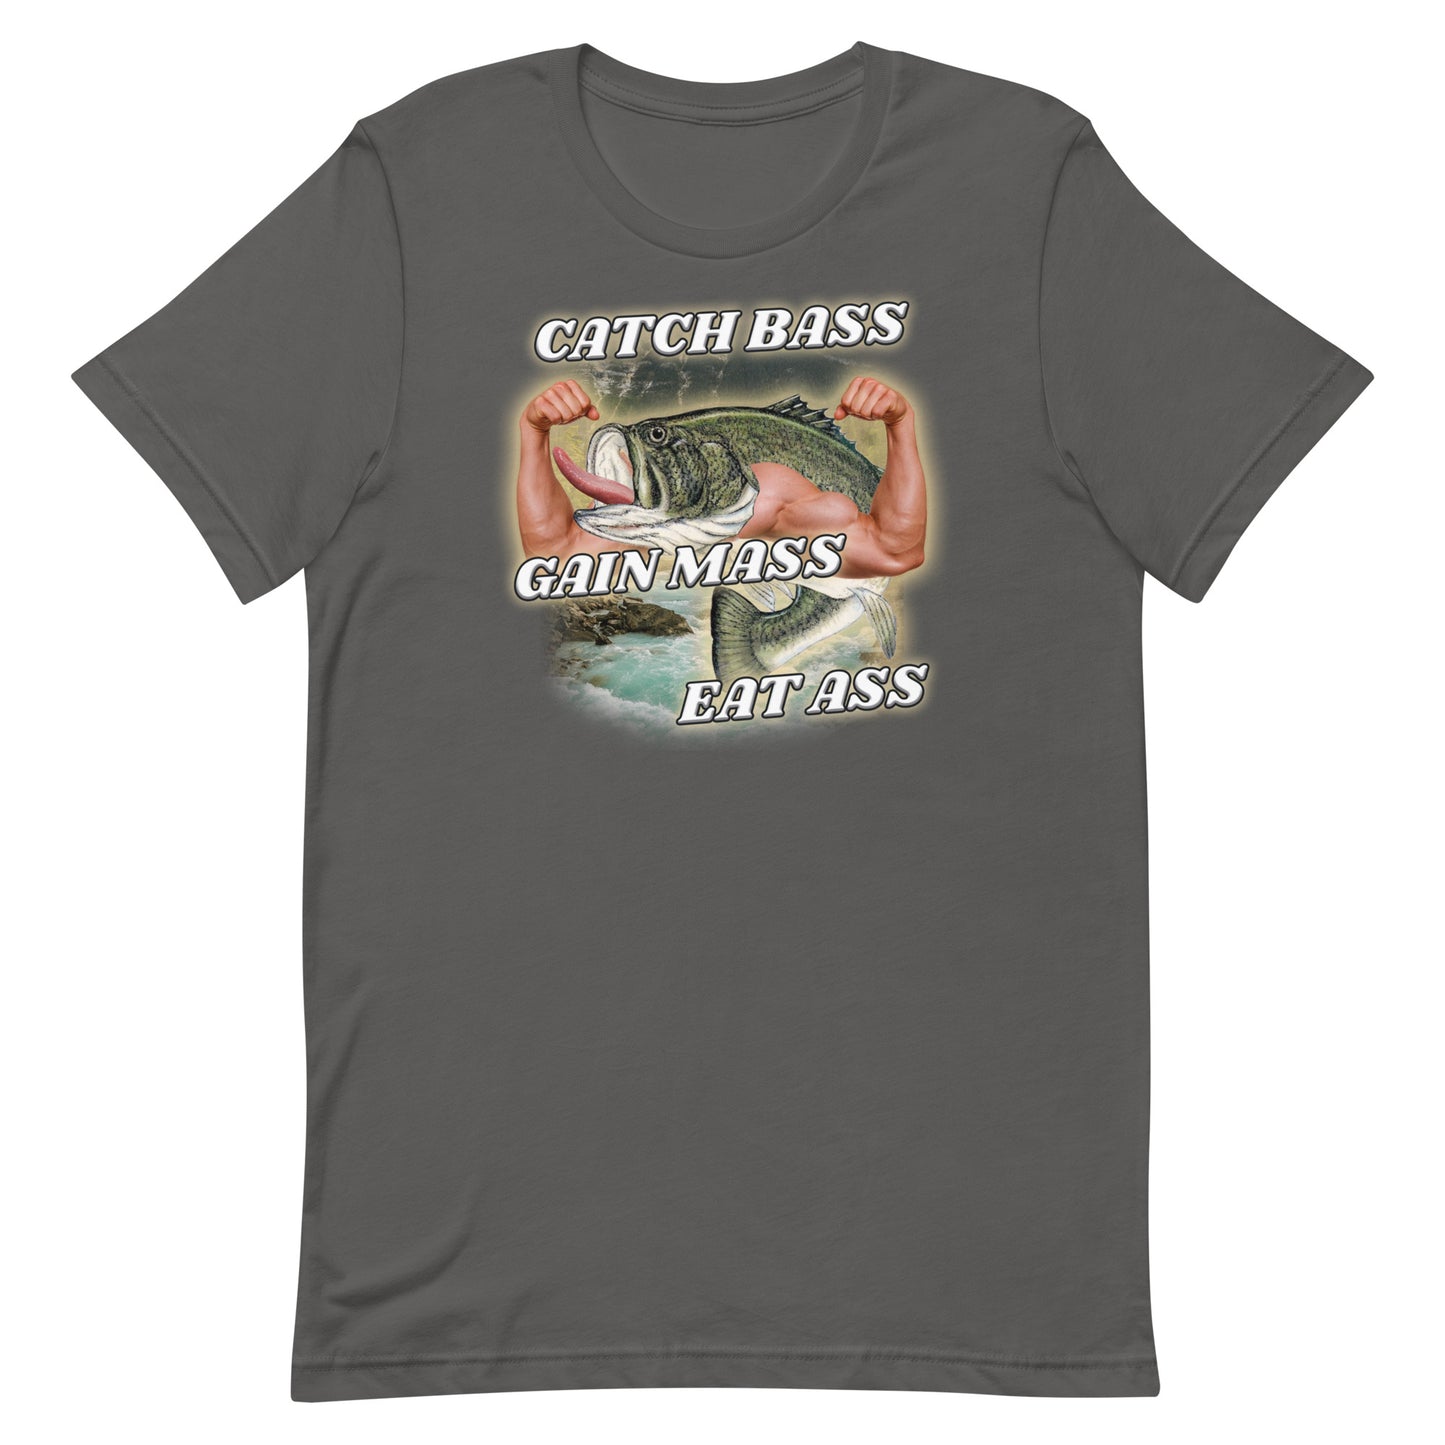 Bass Fishing T Shirts For Men - Band Shirt - Shirt Low Price